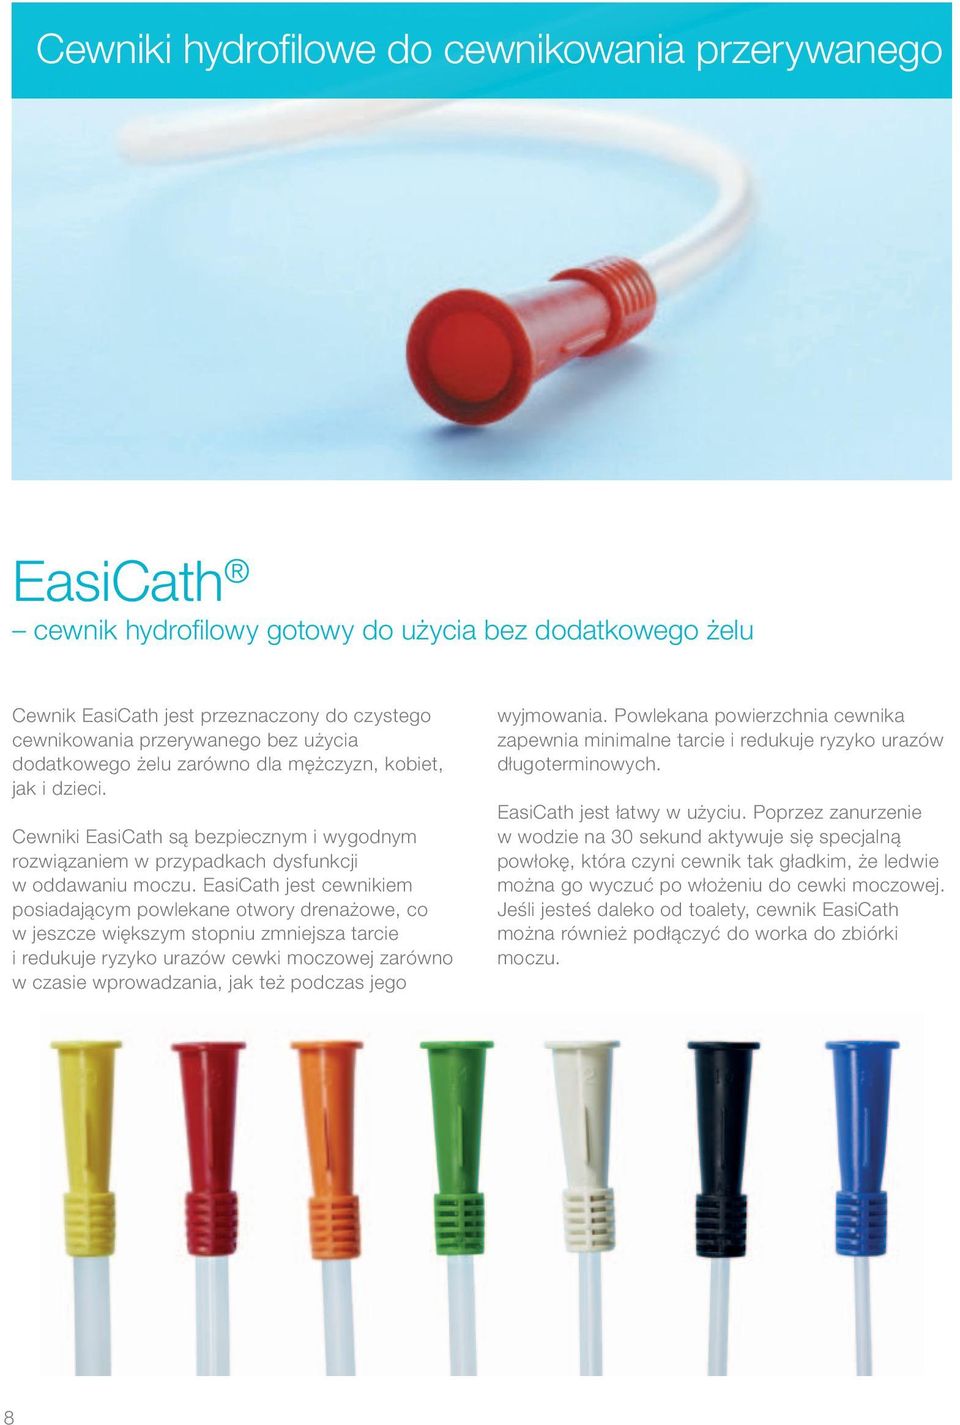 EasiCath jest cewnikiem posiadającym powlekane otwory drenażowe, co w jeszcze większym stopniu zmniejsza tarcie i redukuje ryzyko urazów cewki moczowej zarówno w czasie wprowadzania, jak też podczas